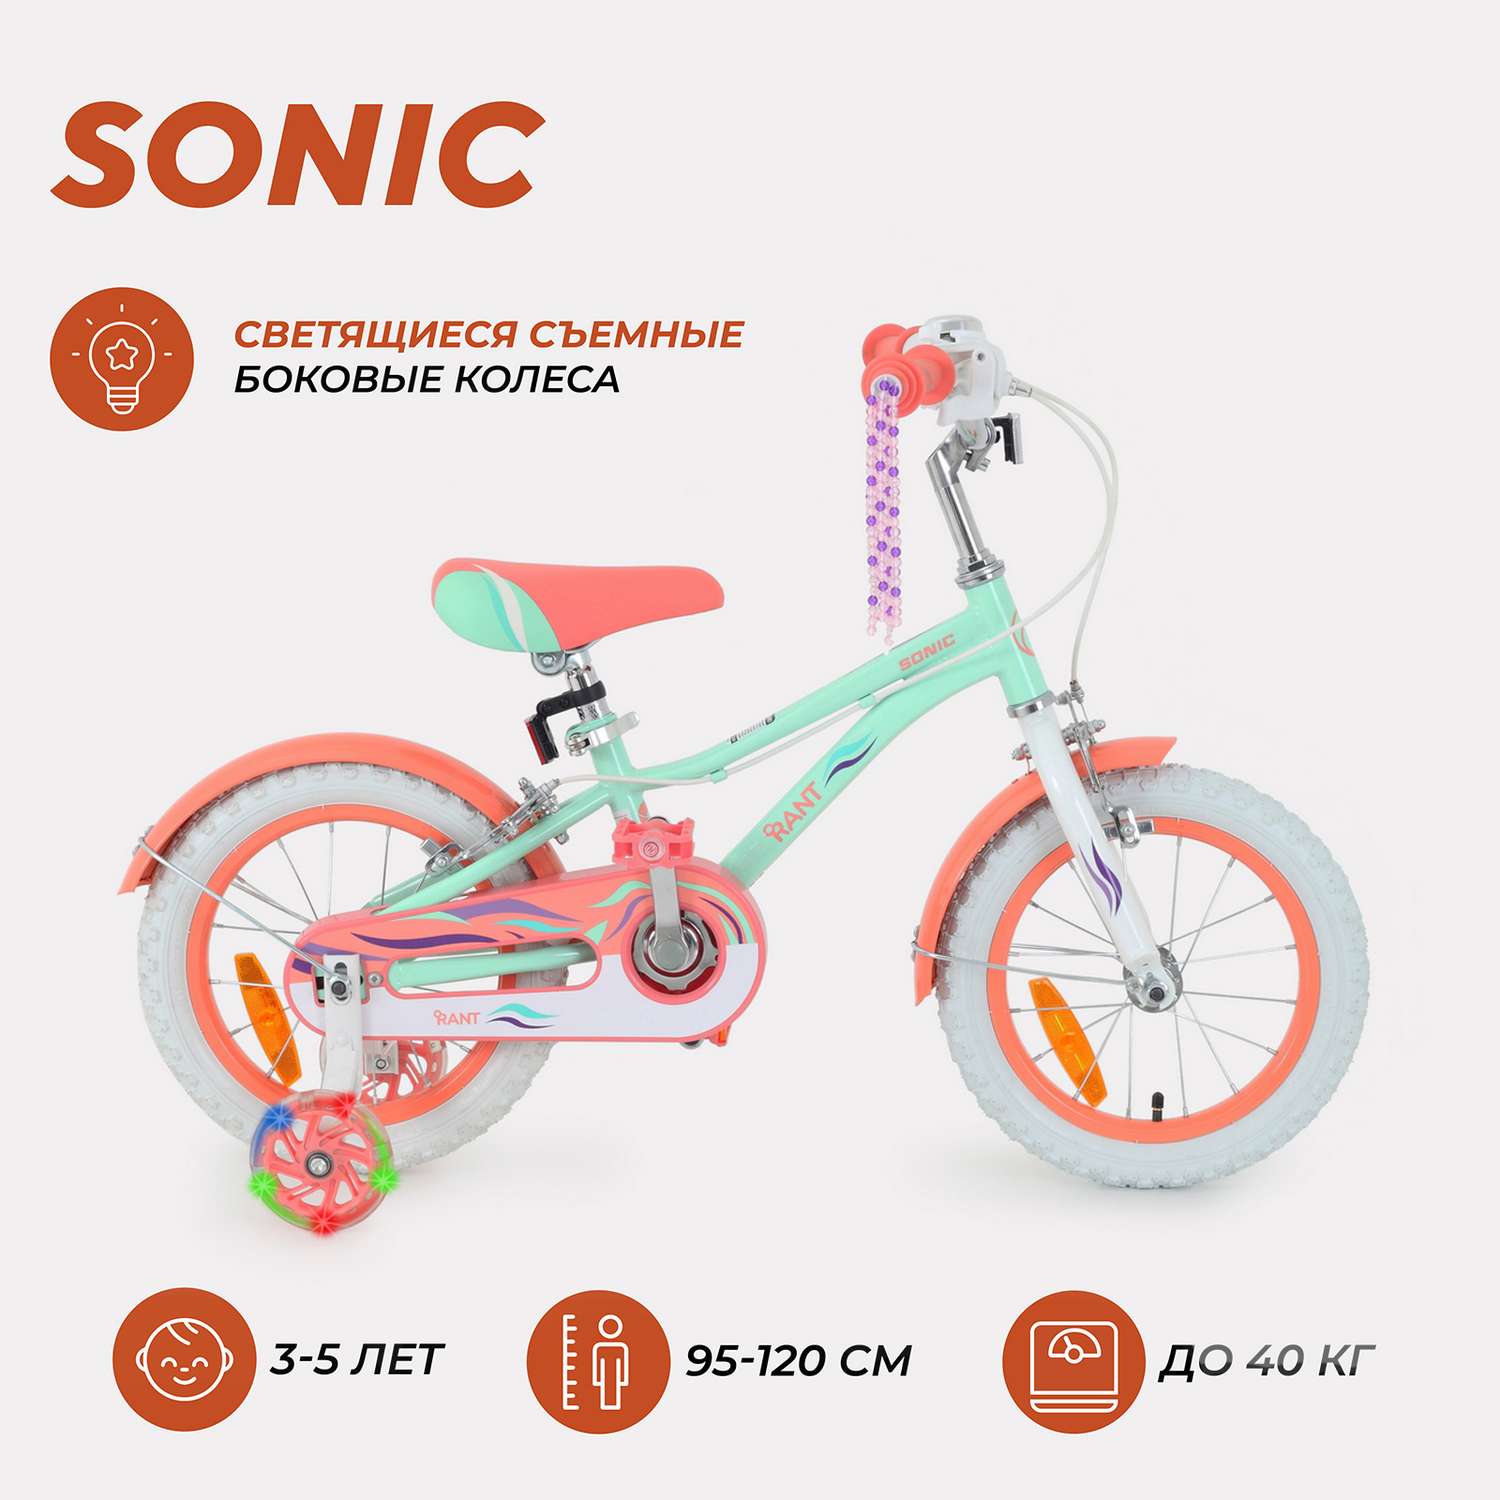 Велосипед 2-х колесный детский Rant Sonic мятный 14 - фото 2